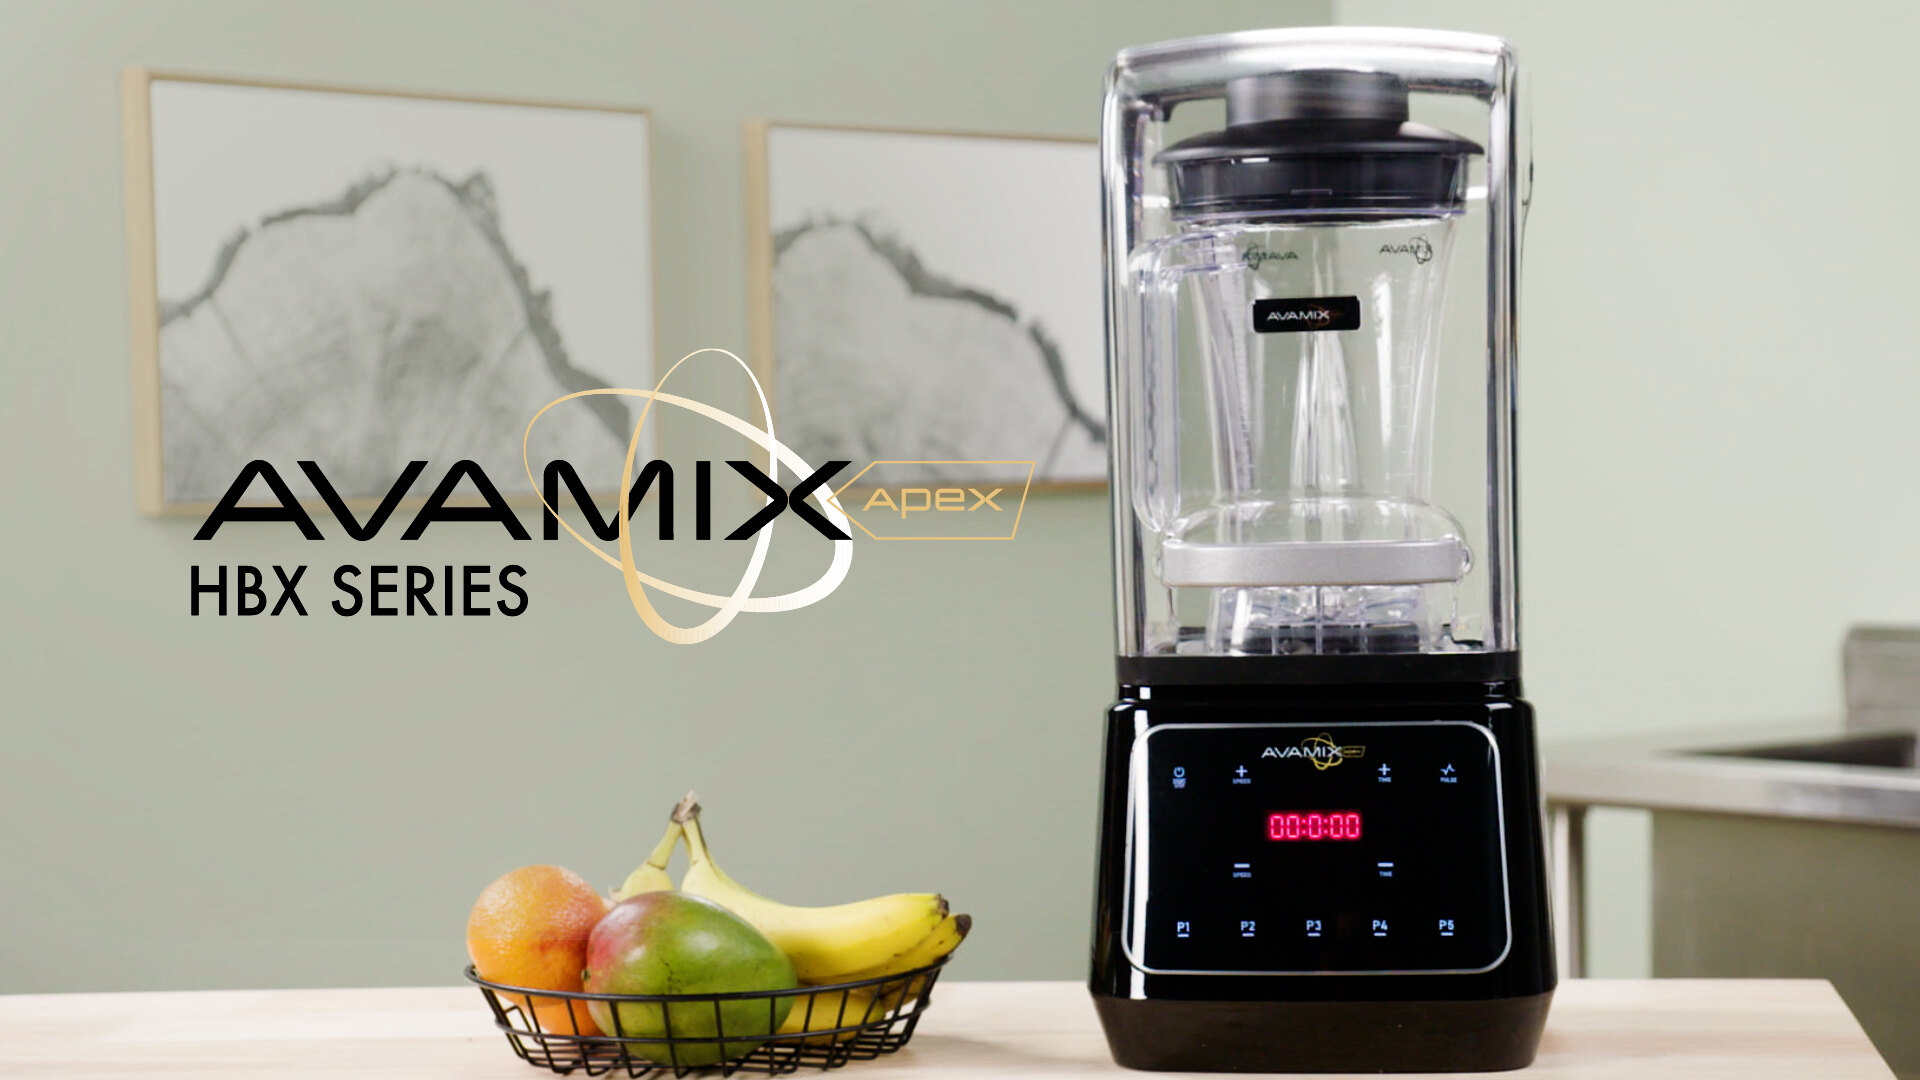 Avamix Apex HBX Series Blenders